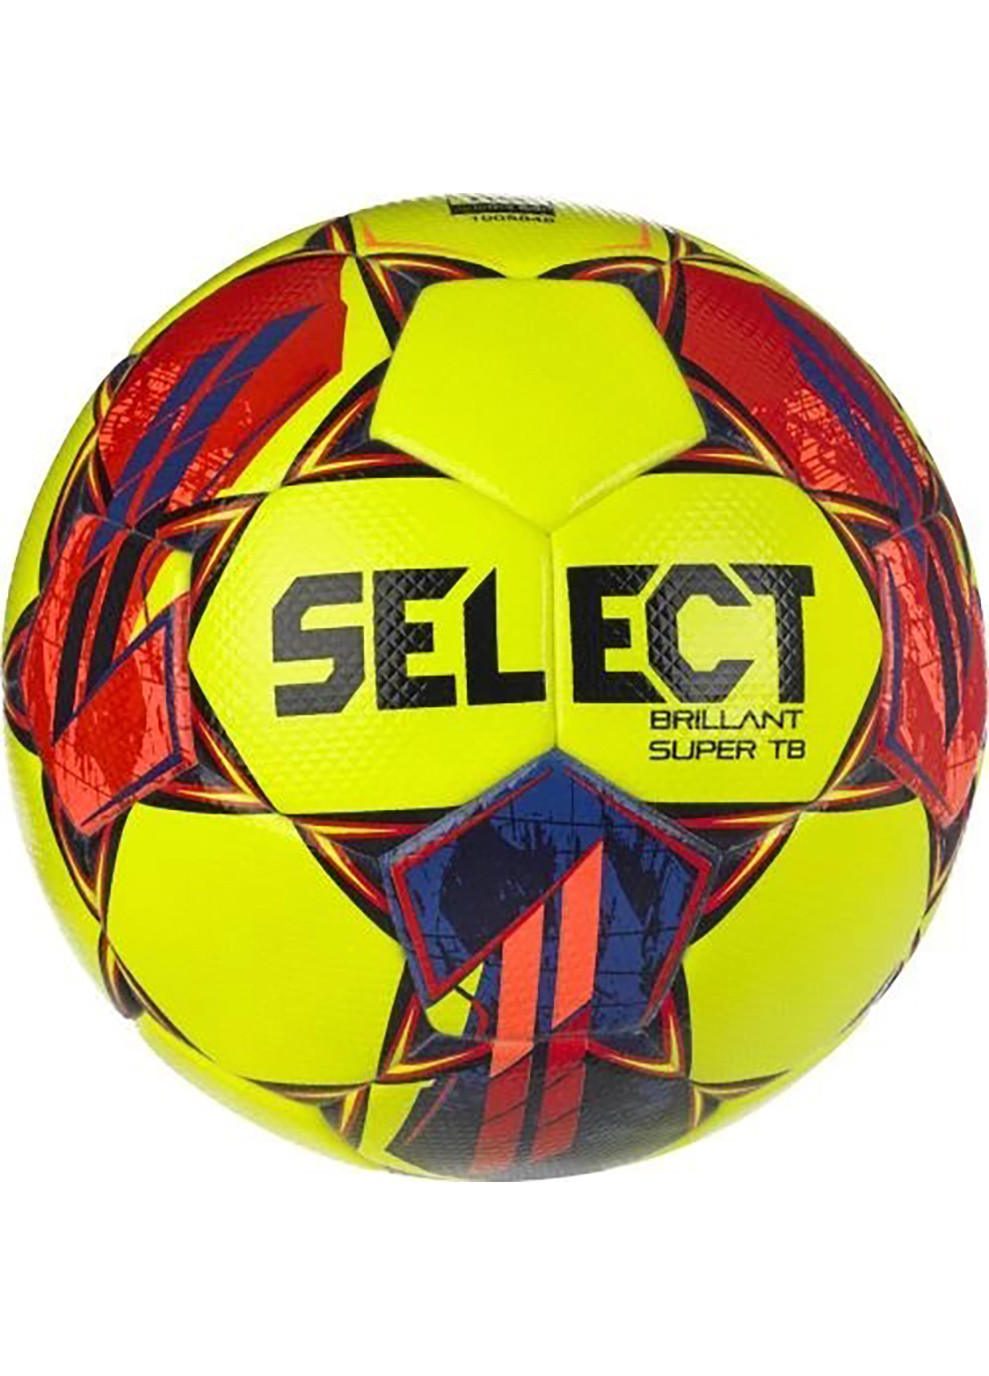 М'яч футбольний BRILLANT SUPER FIFA TB v23 жовтий, червоний Уні 5 Select (262599182)